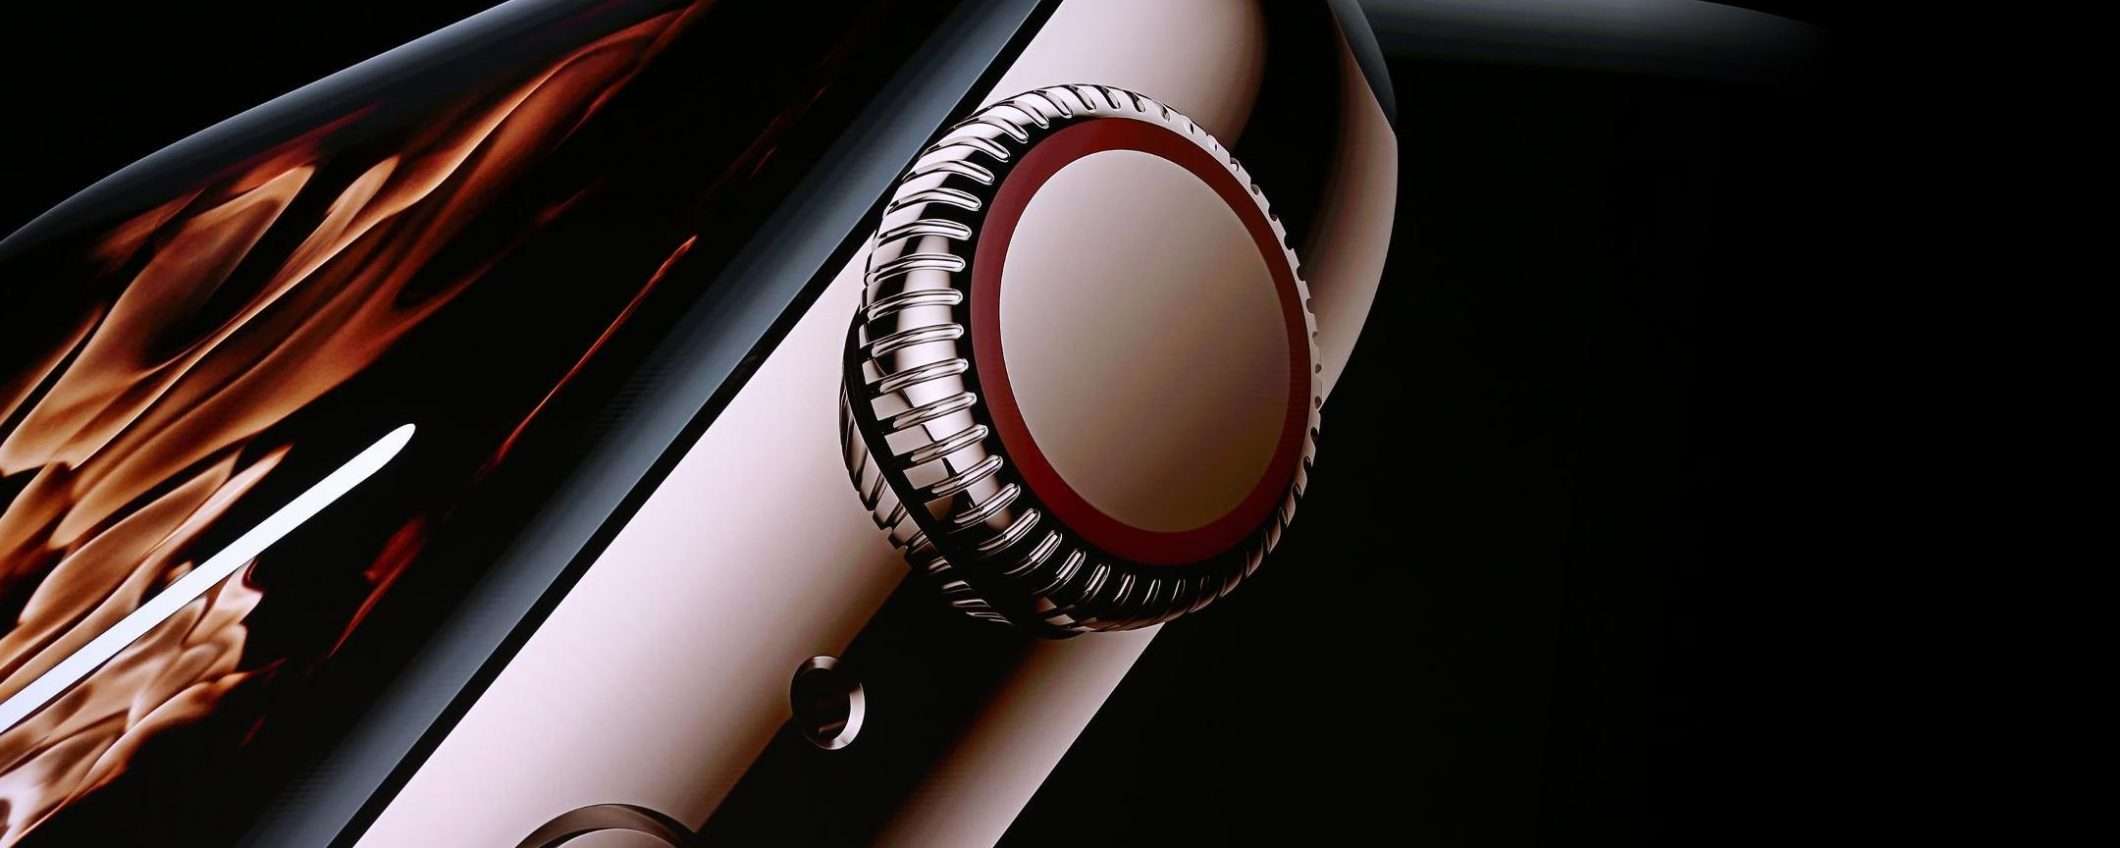 Apple Watch Series 4: potenza, cuore e design